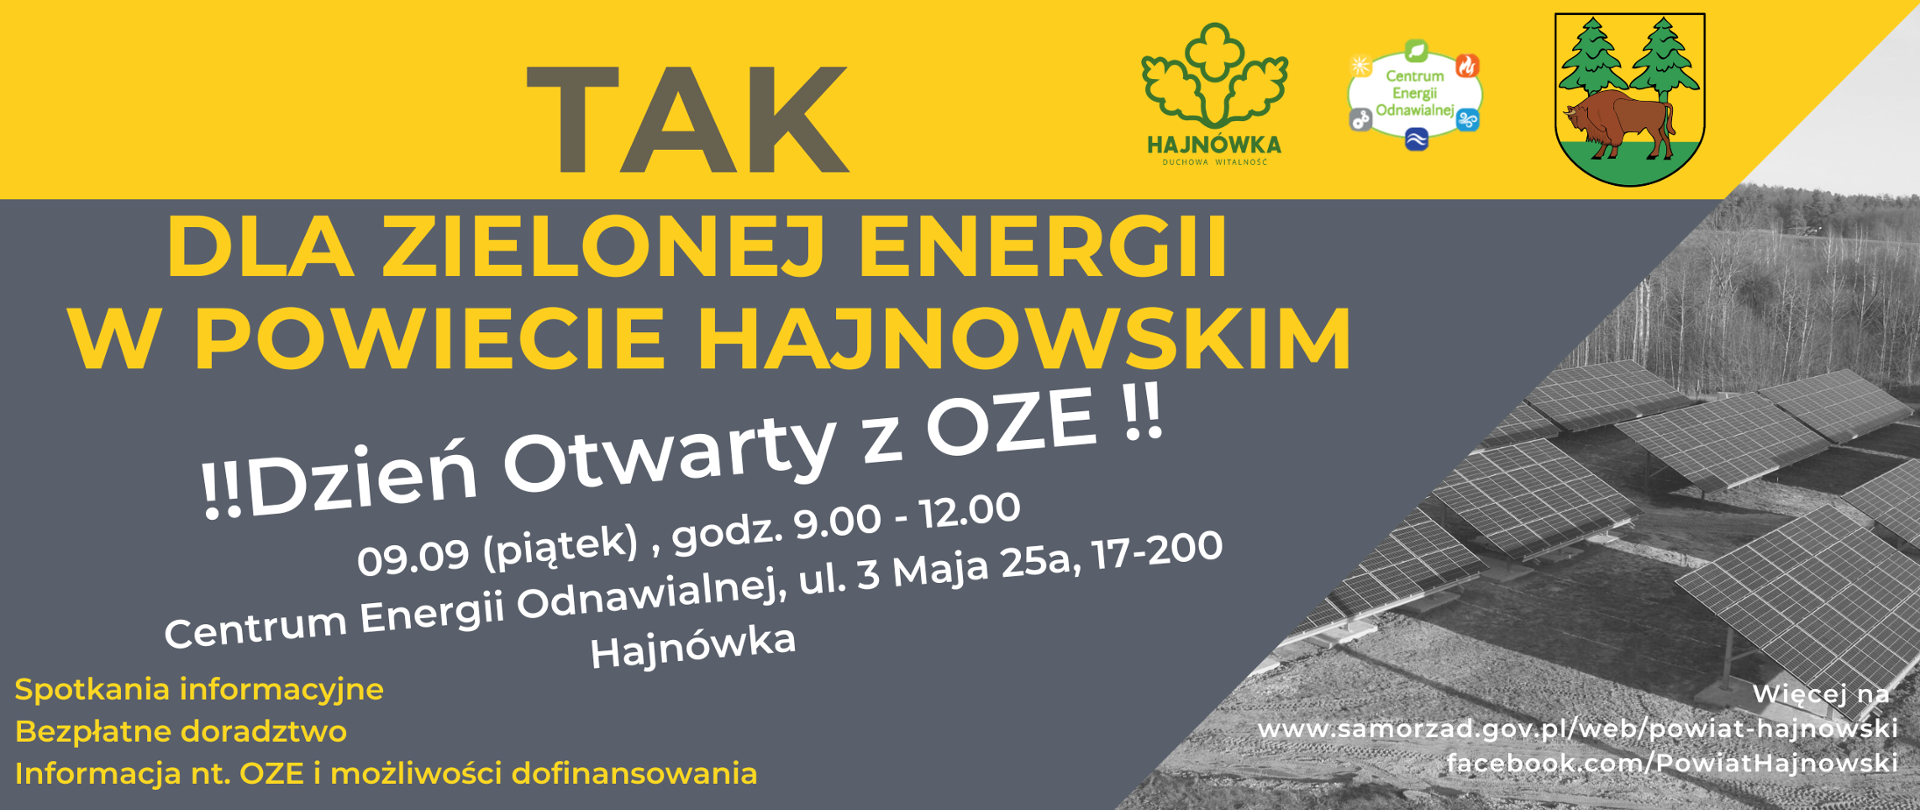 Plakat informujący o terminie i miejscu wydarzenia - "Dzień otwarty z OZE" - na szaro- żółtym tle treść informacyjna, u góry herb powiatu, logo miasta Hajnówka oraz Centrum Energii Odnawialnej